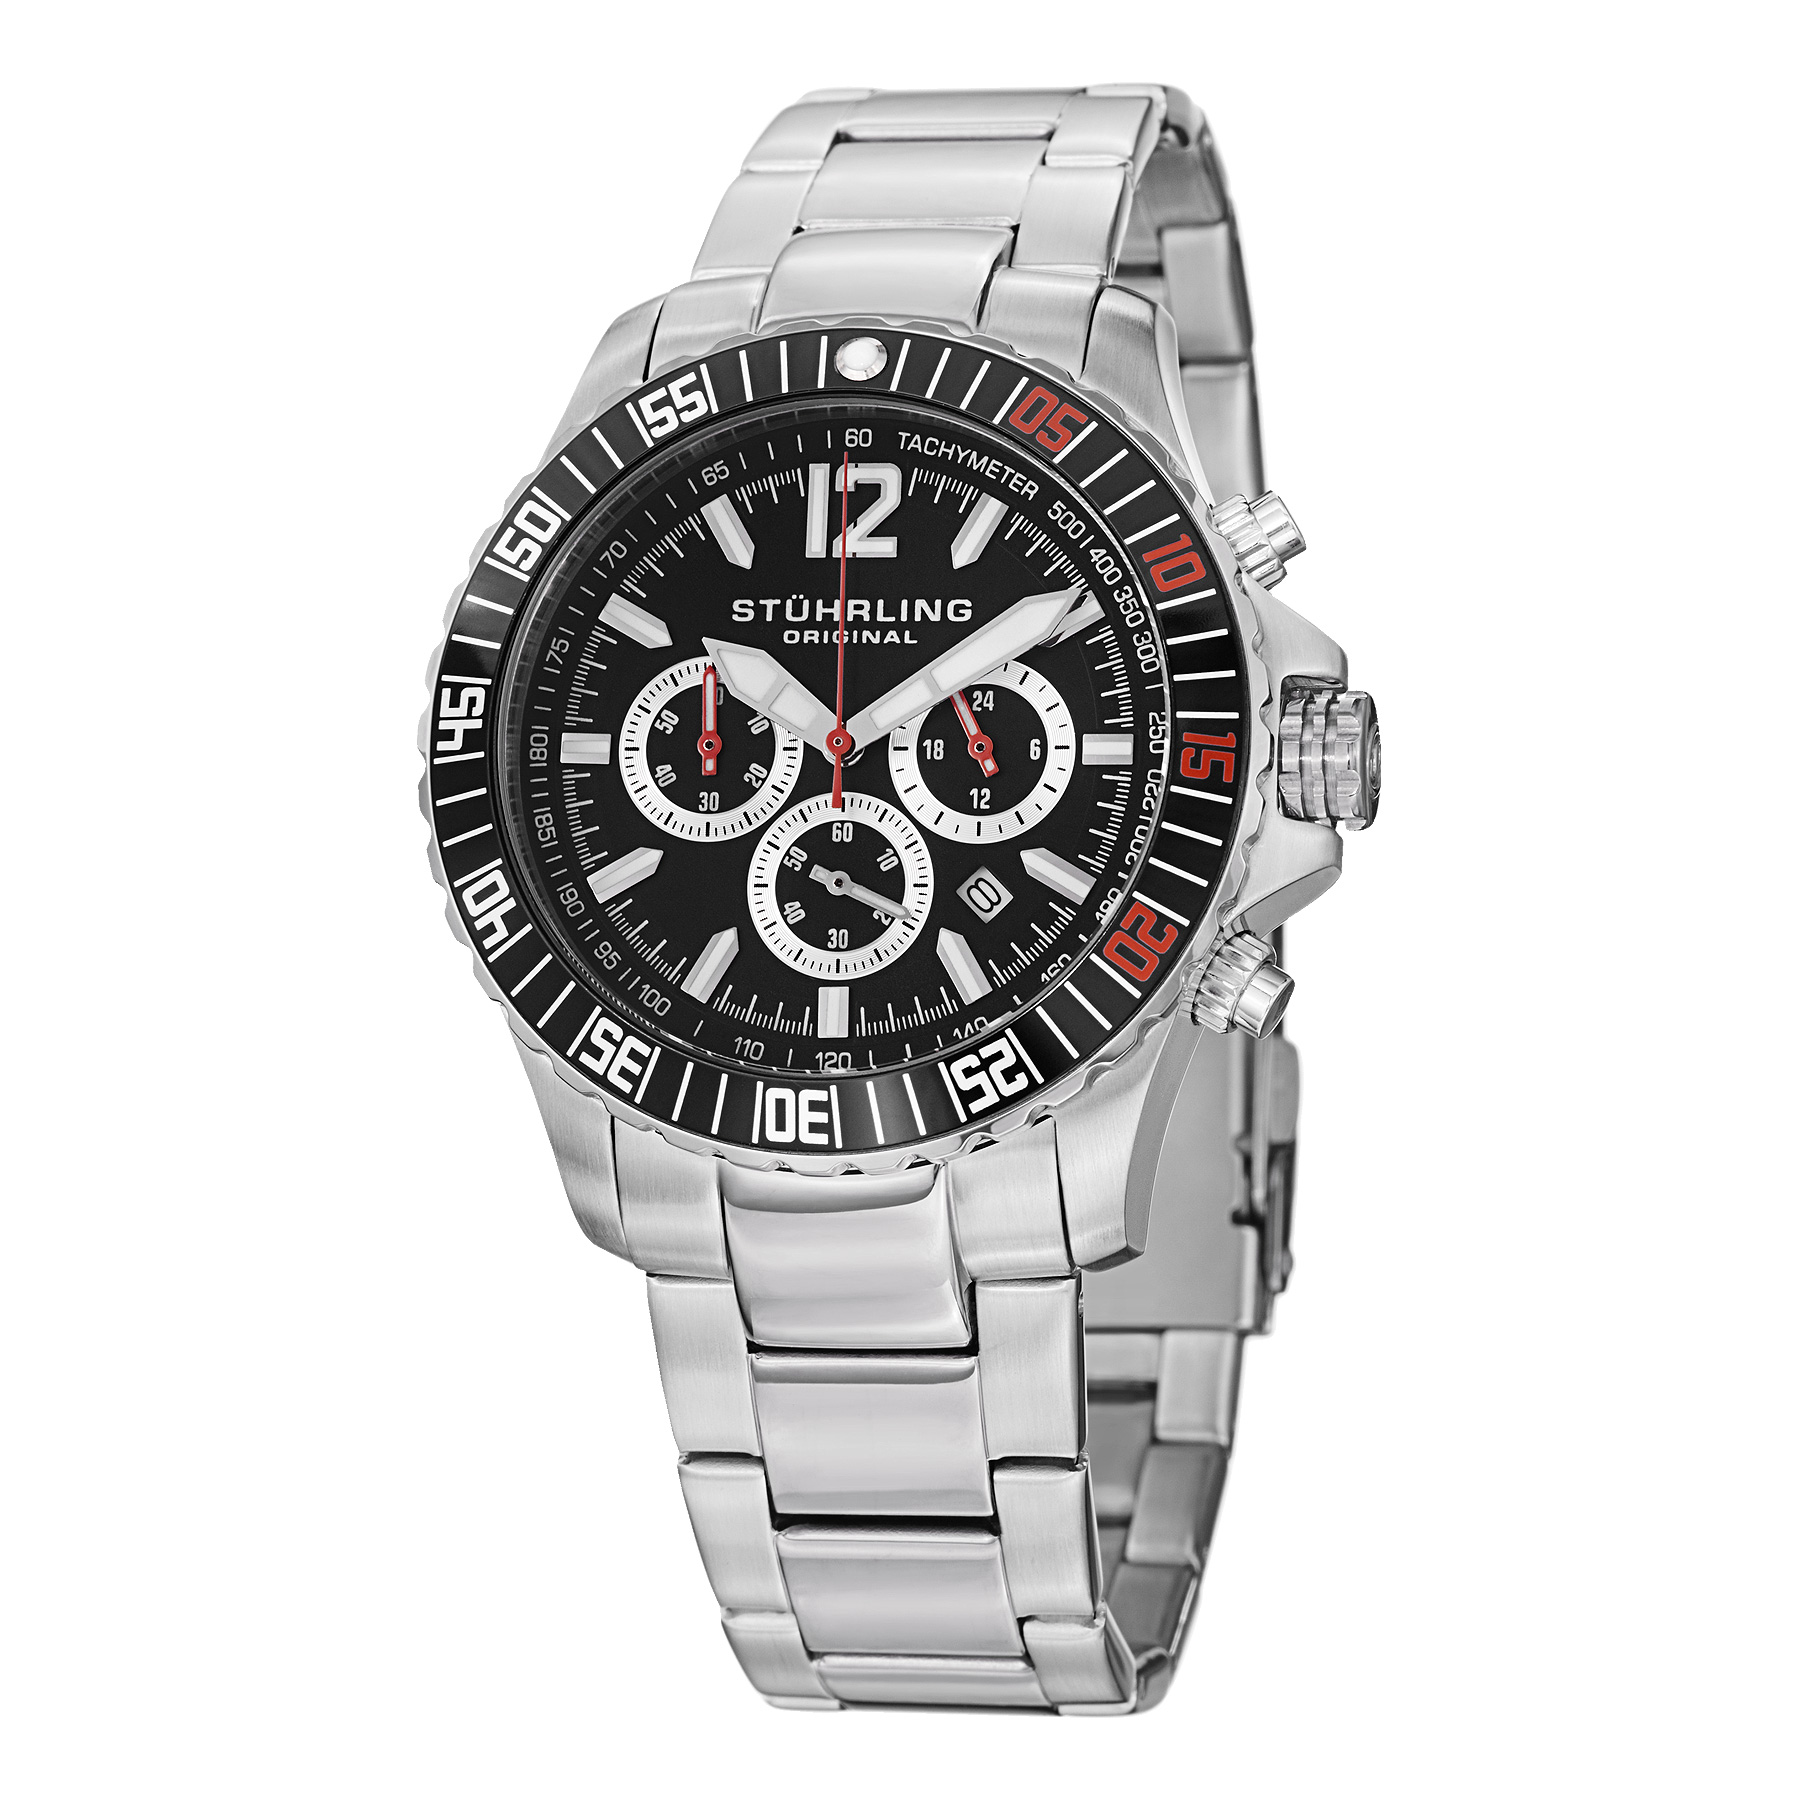 Stuhrling Monaco Men's Watch Model 868.01